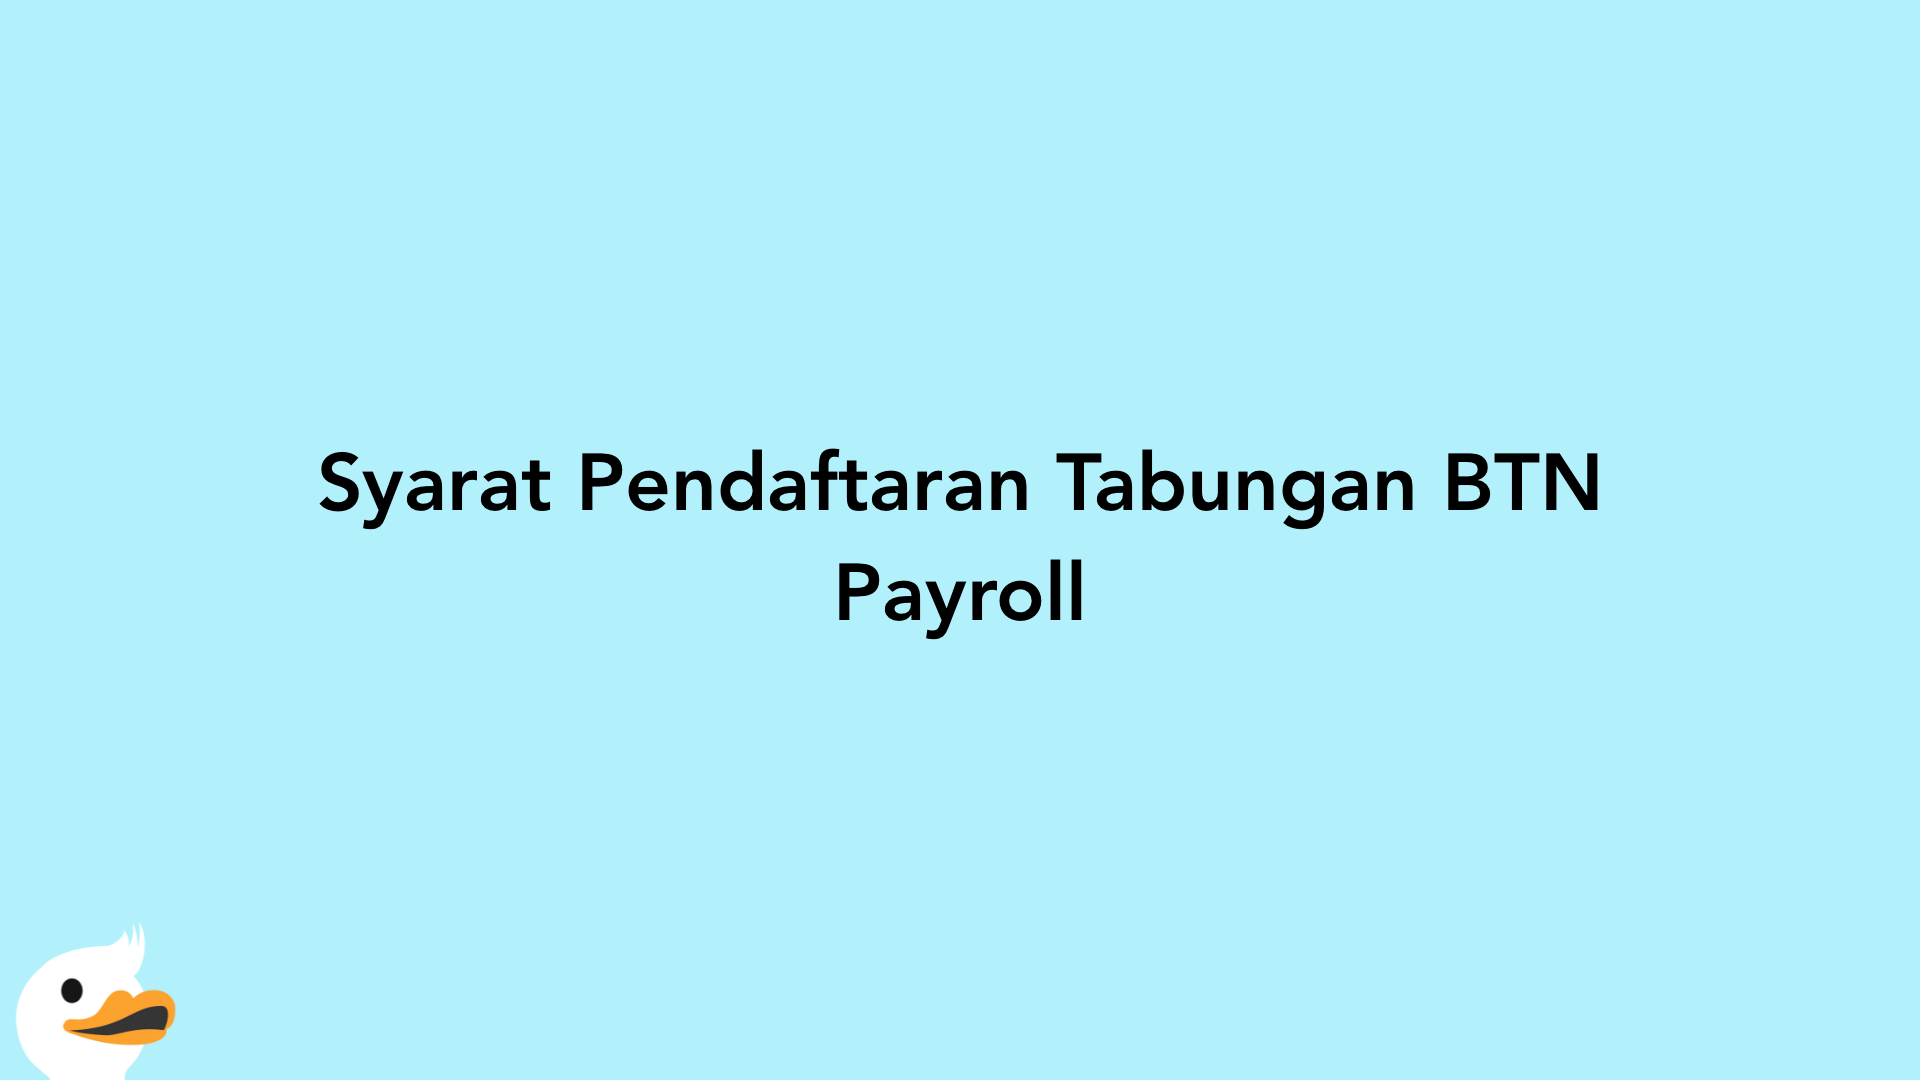 Syarat Pendaftaran Tabungan BTN Payroll